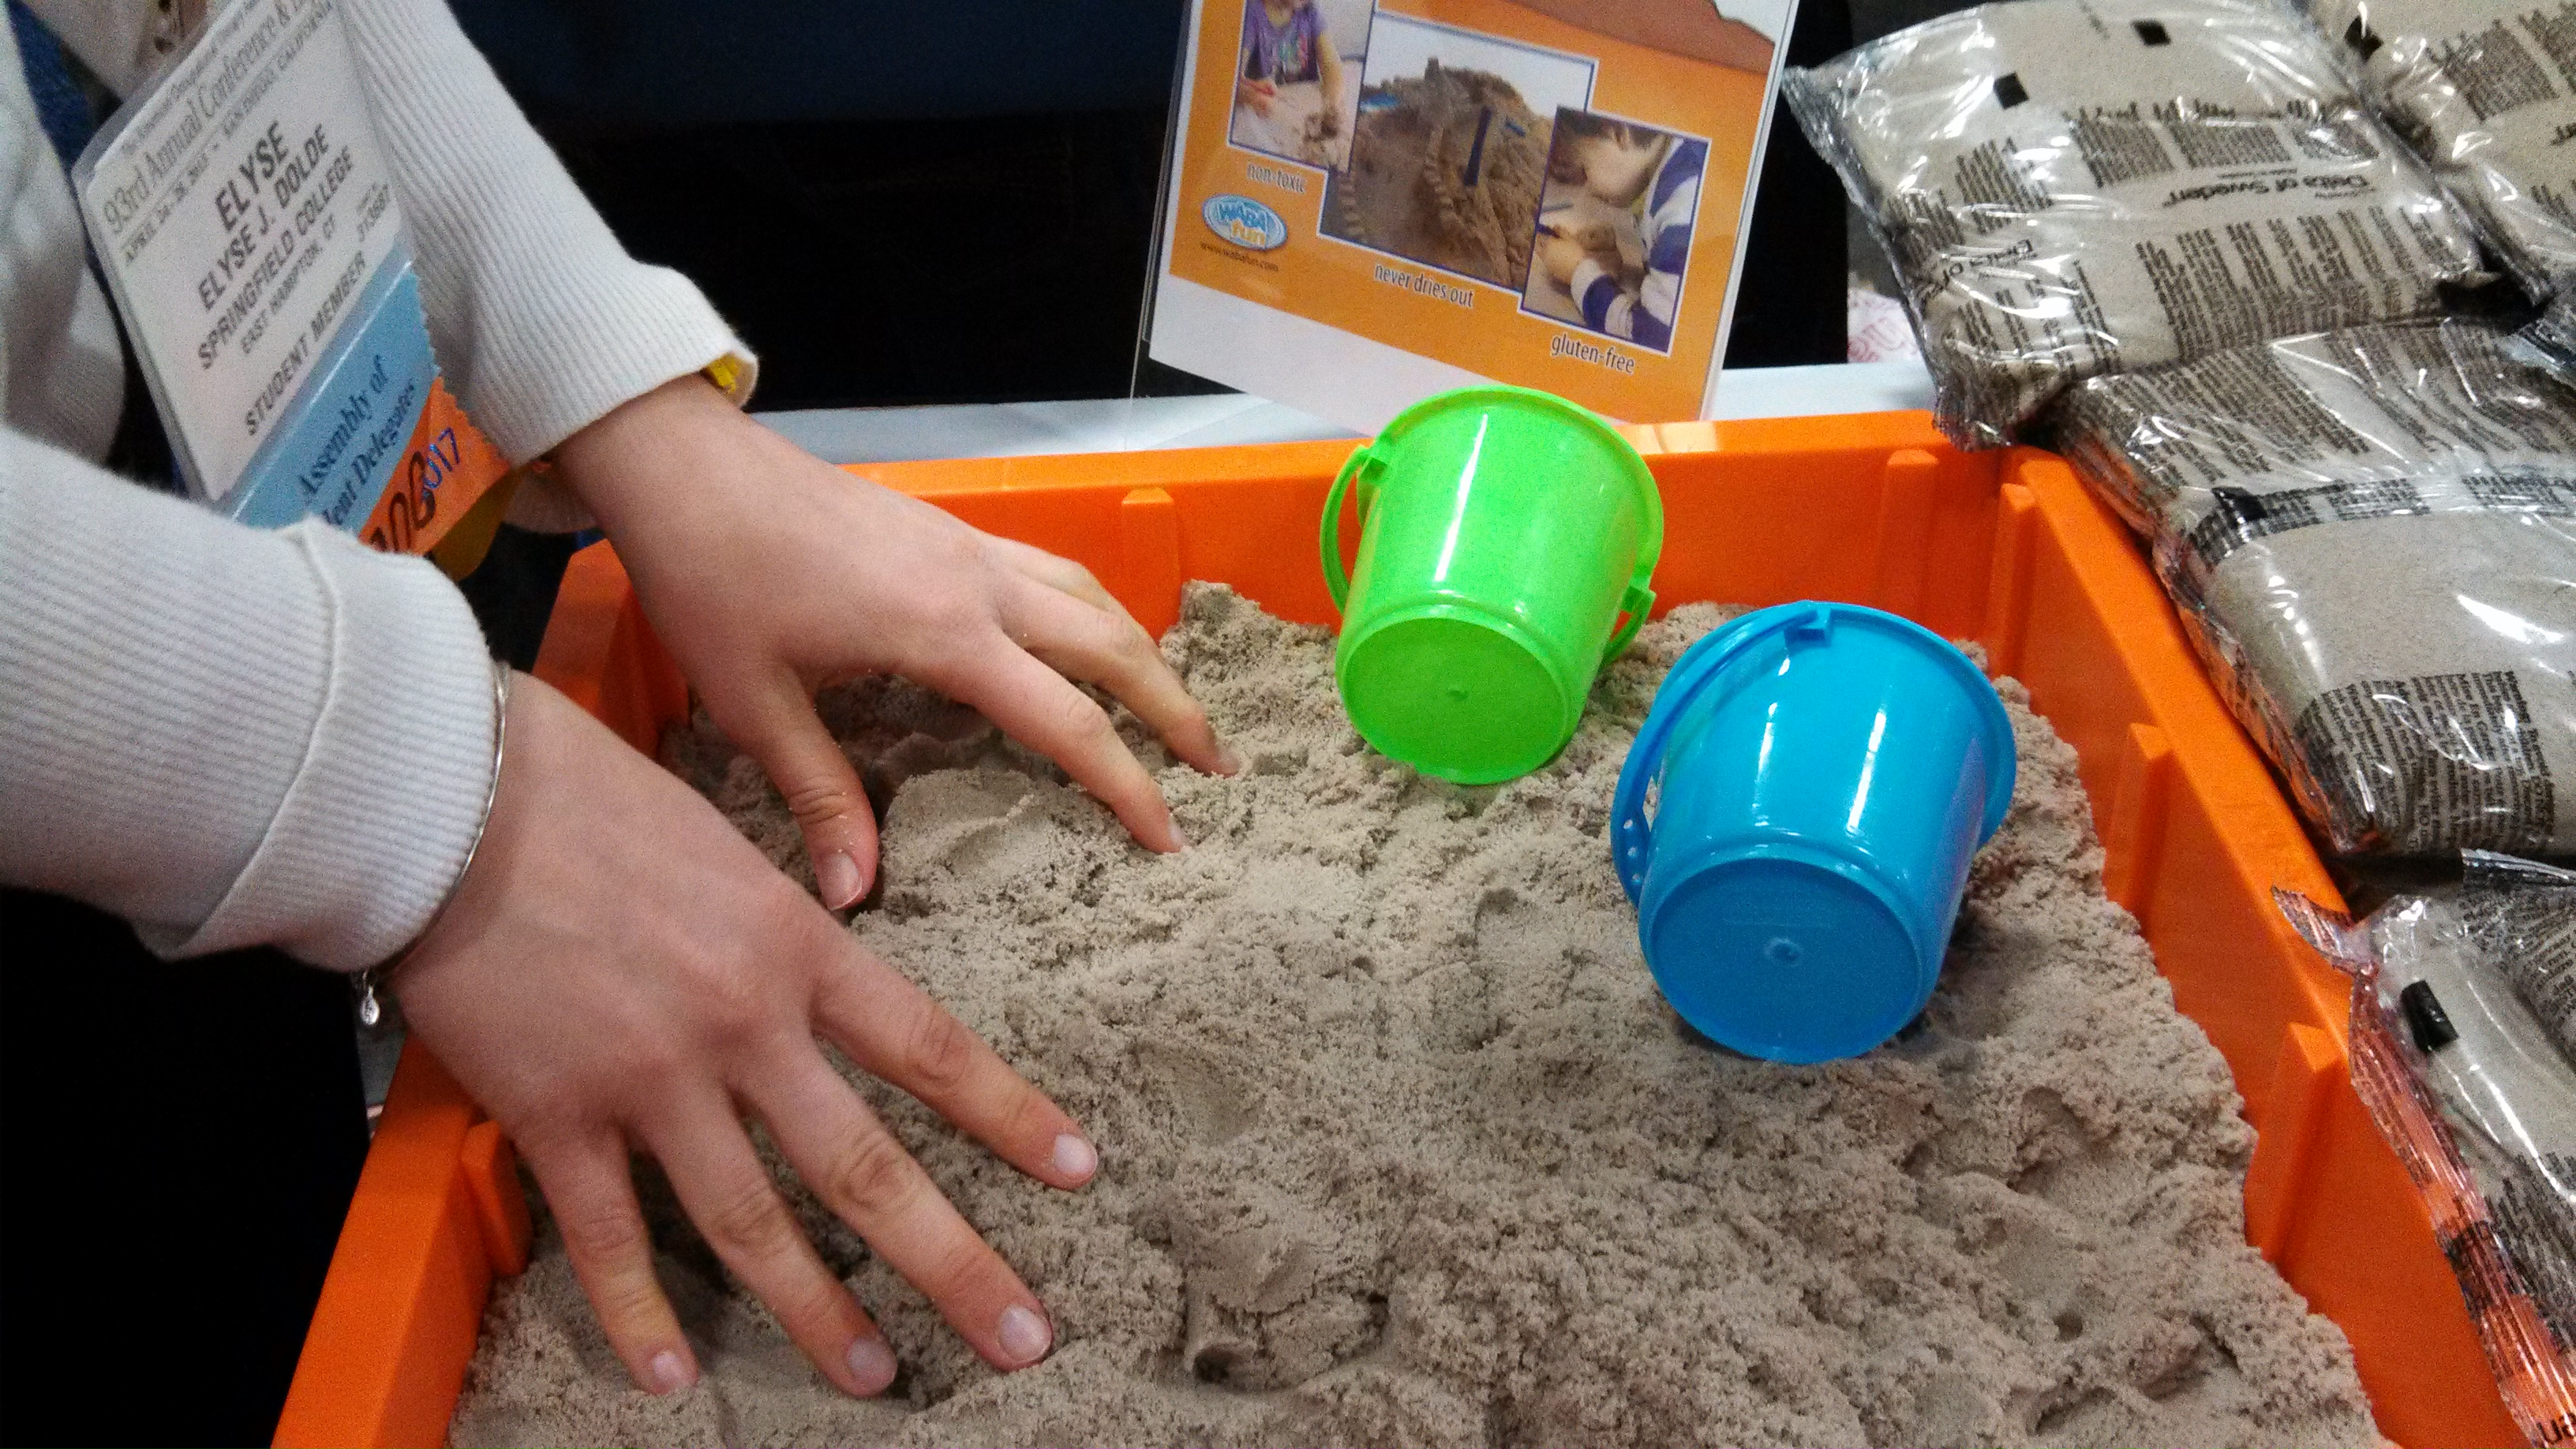 kinetic sand play